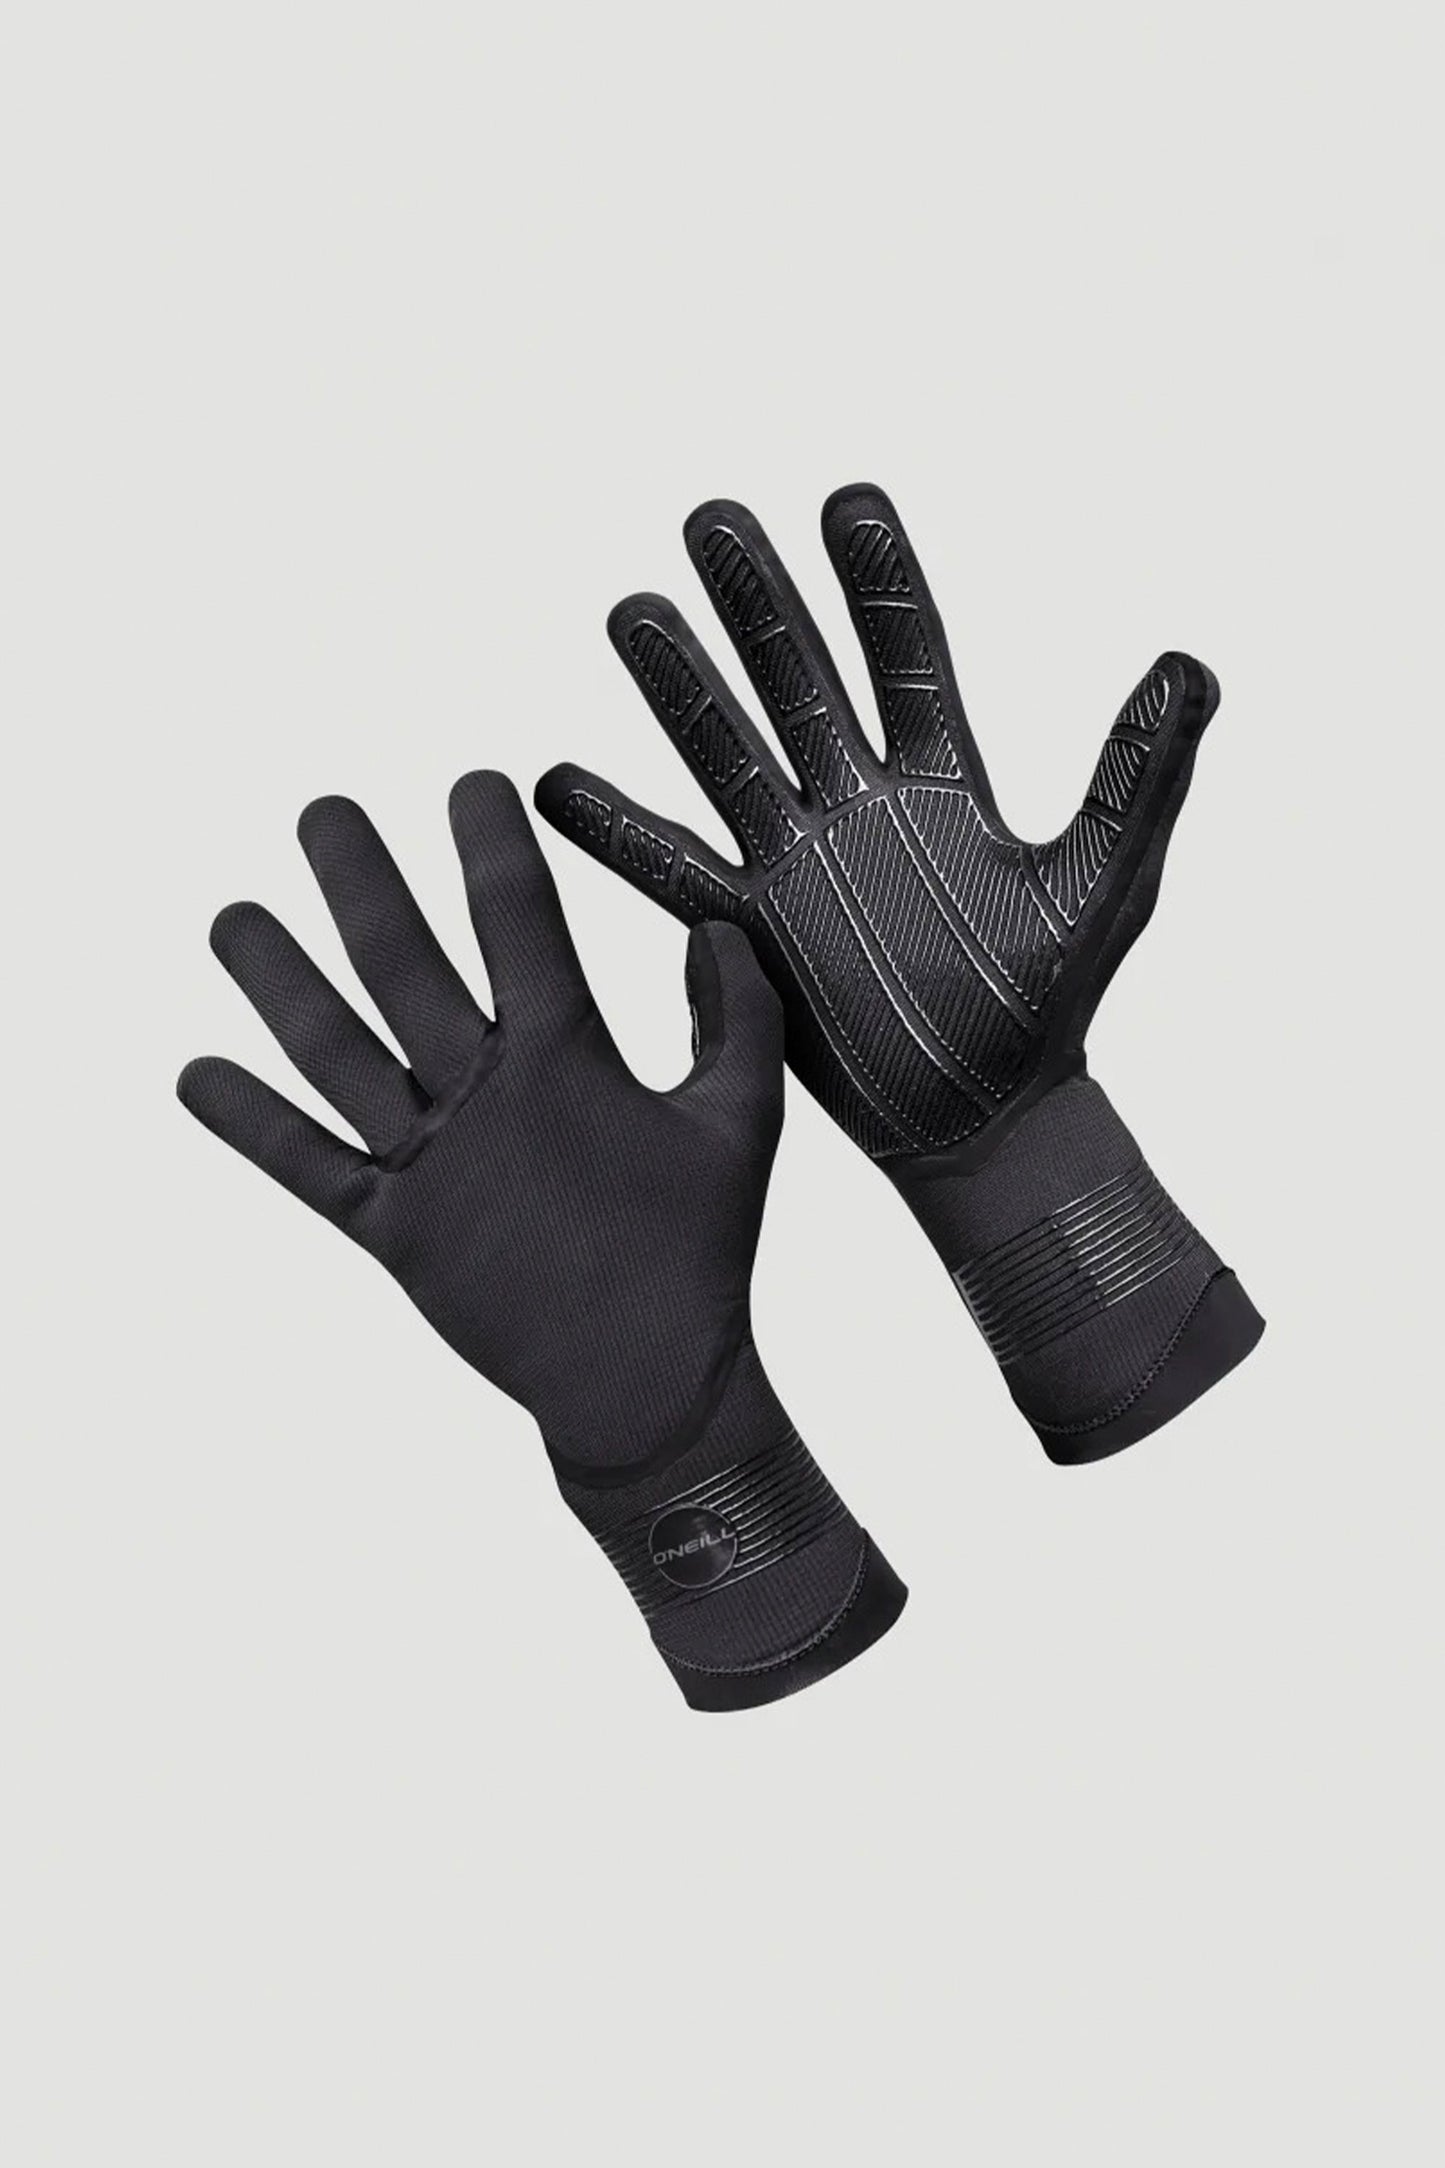    Pukas-Surf-Shop-oneill-wetsuit-gloves-Psycho-Tech-1.5mm-Glove